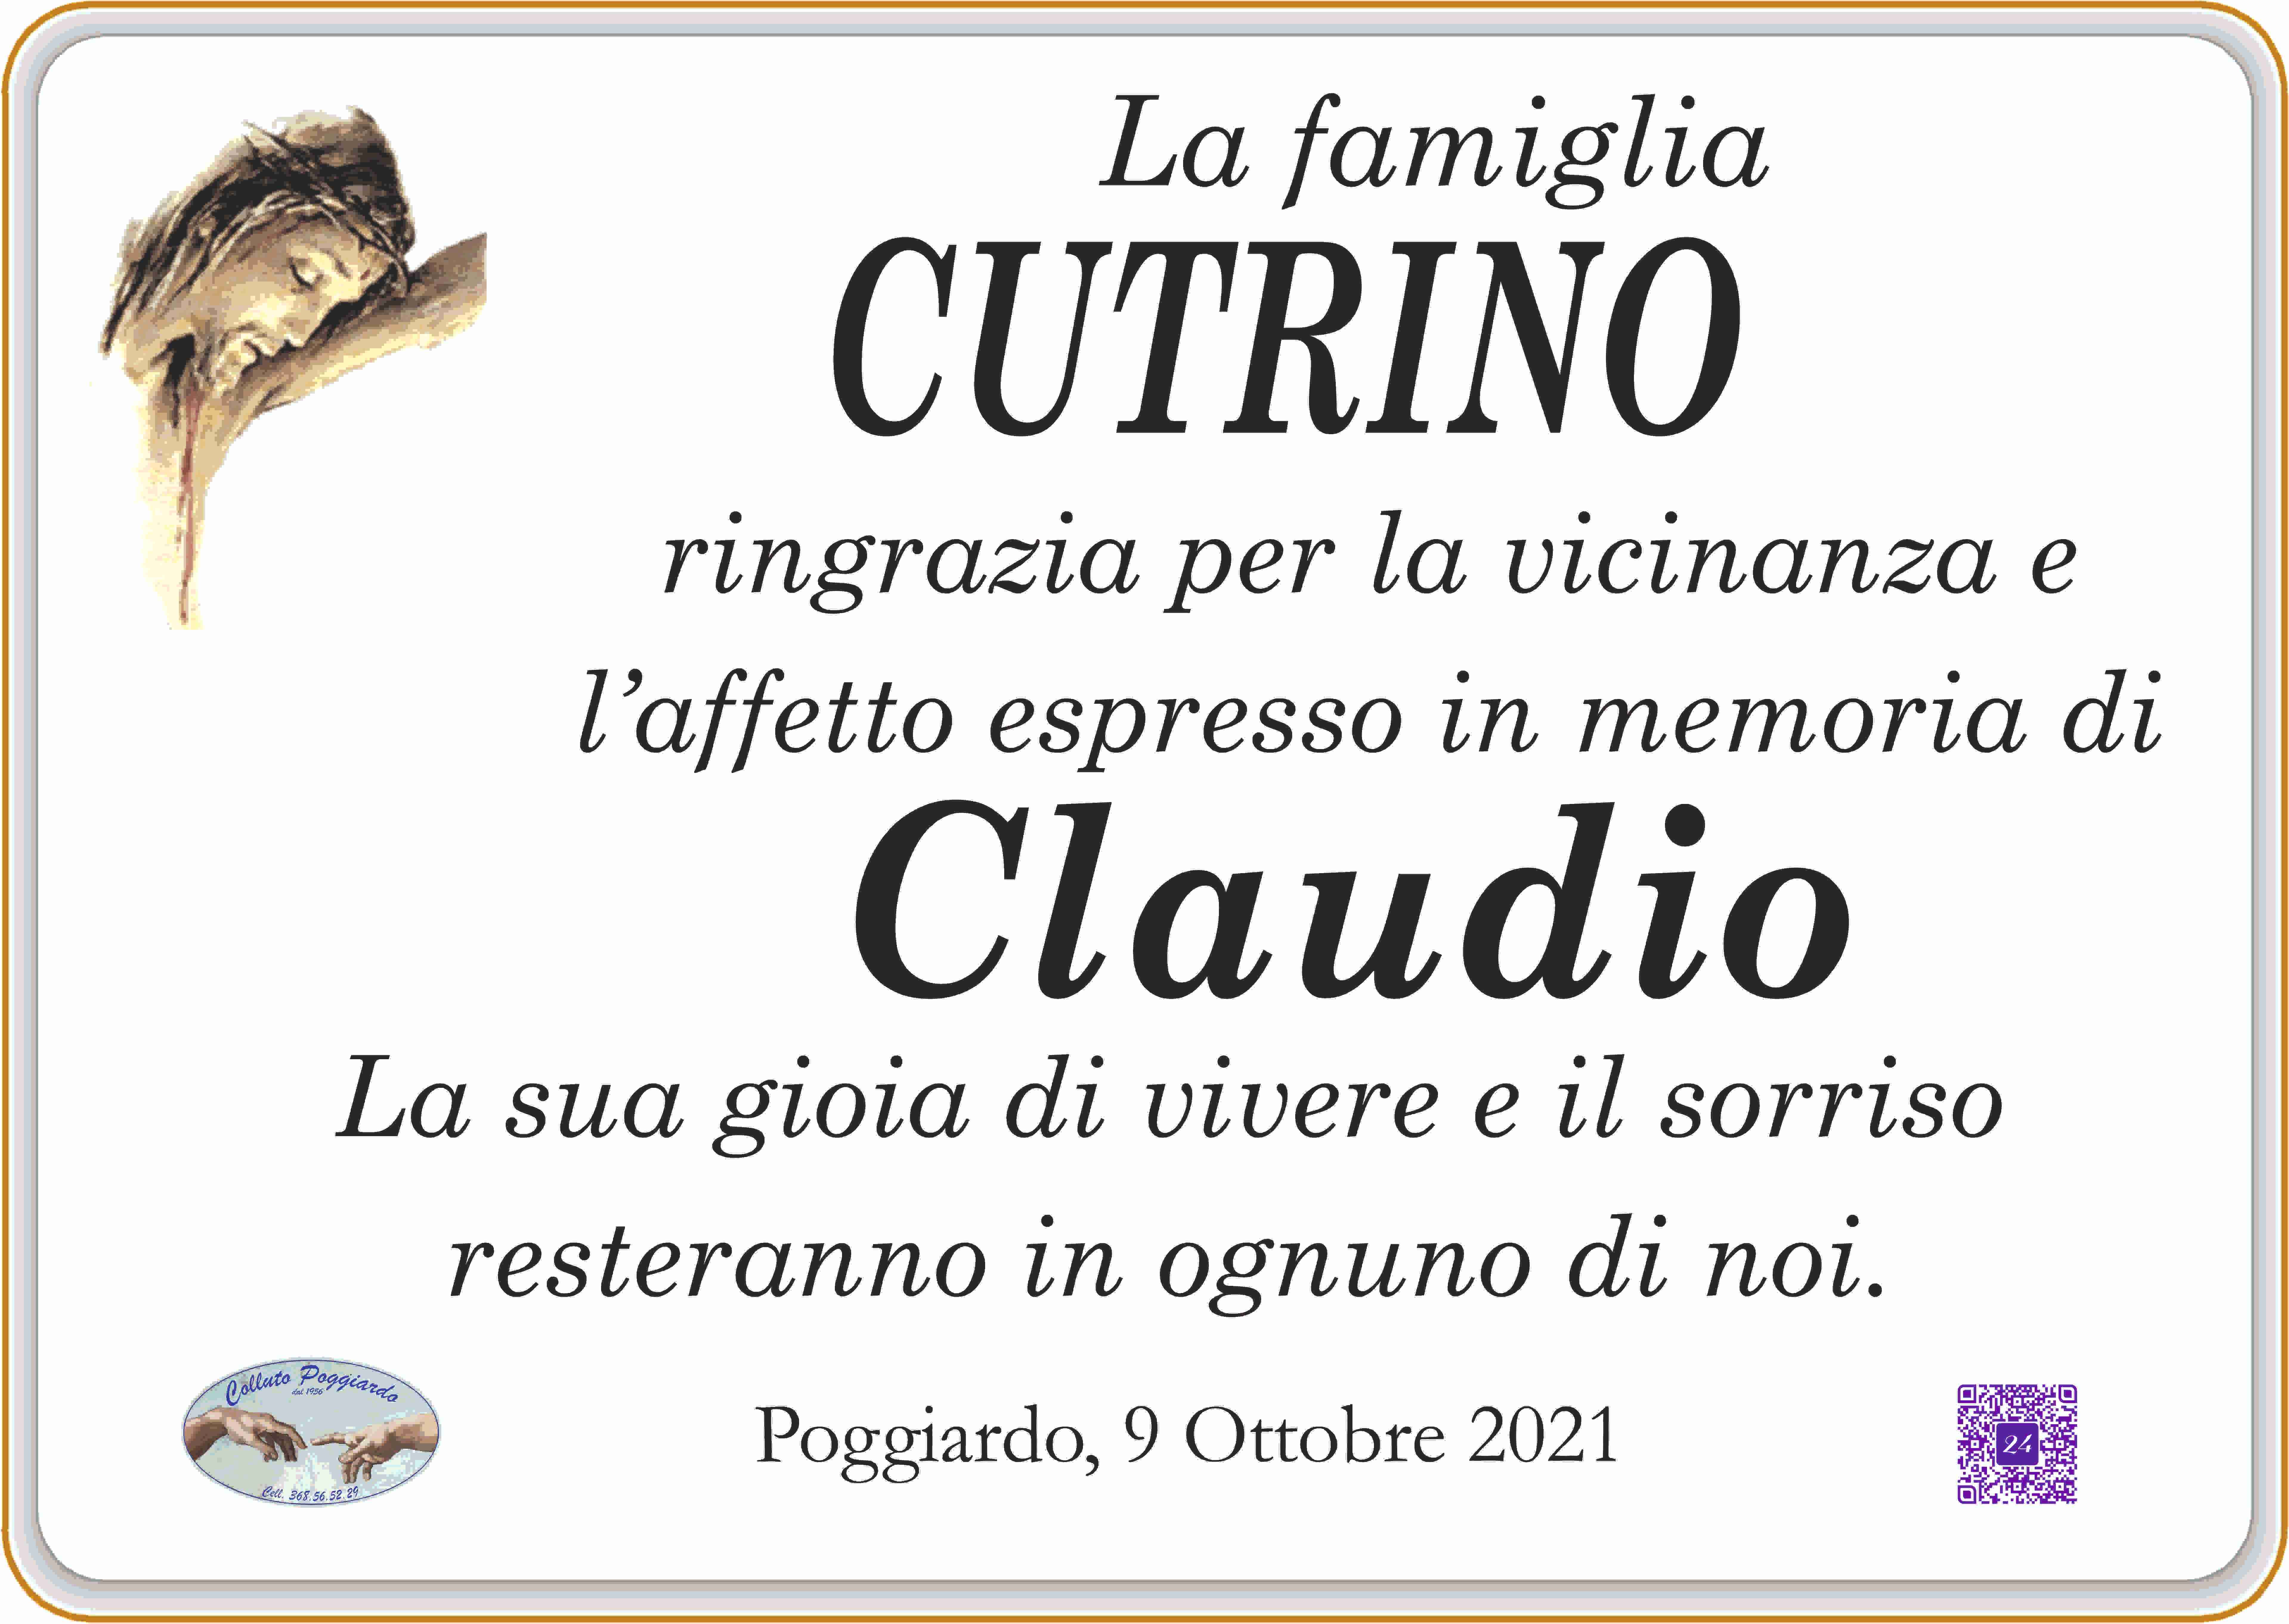 Claudio Cutrino